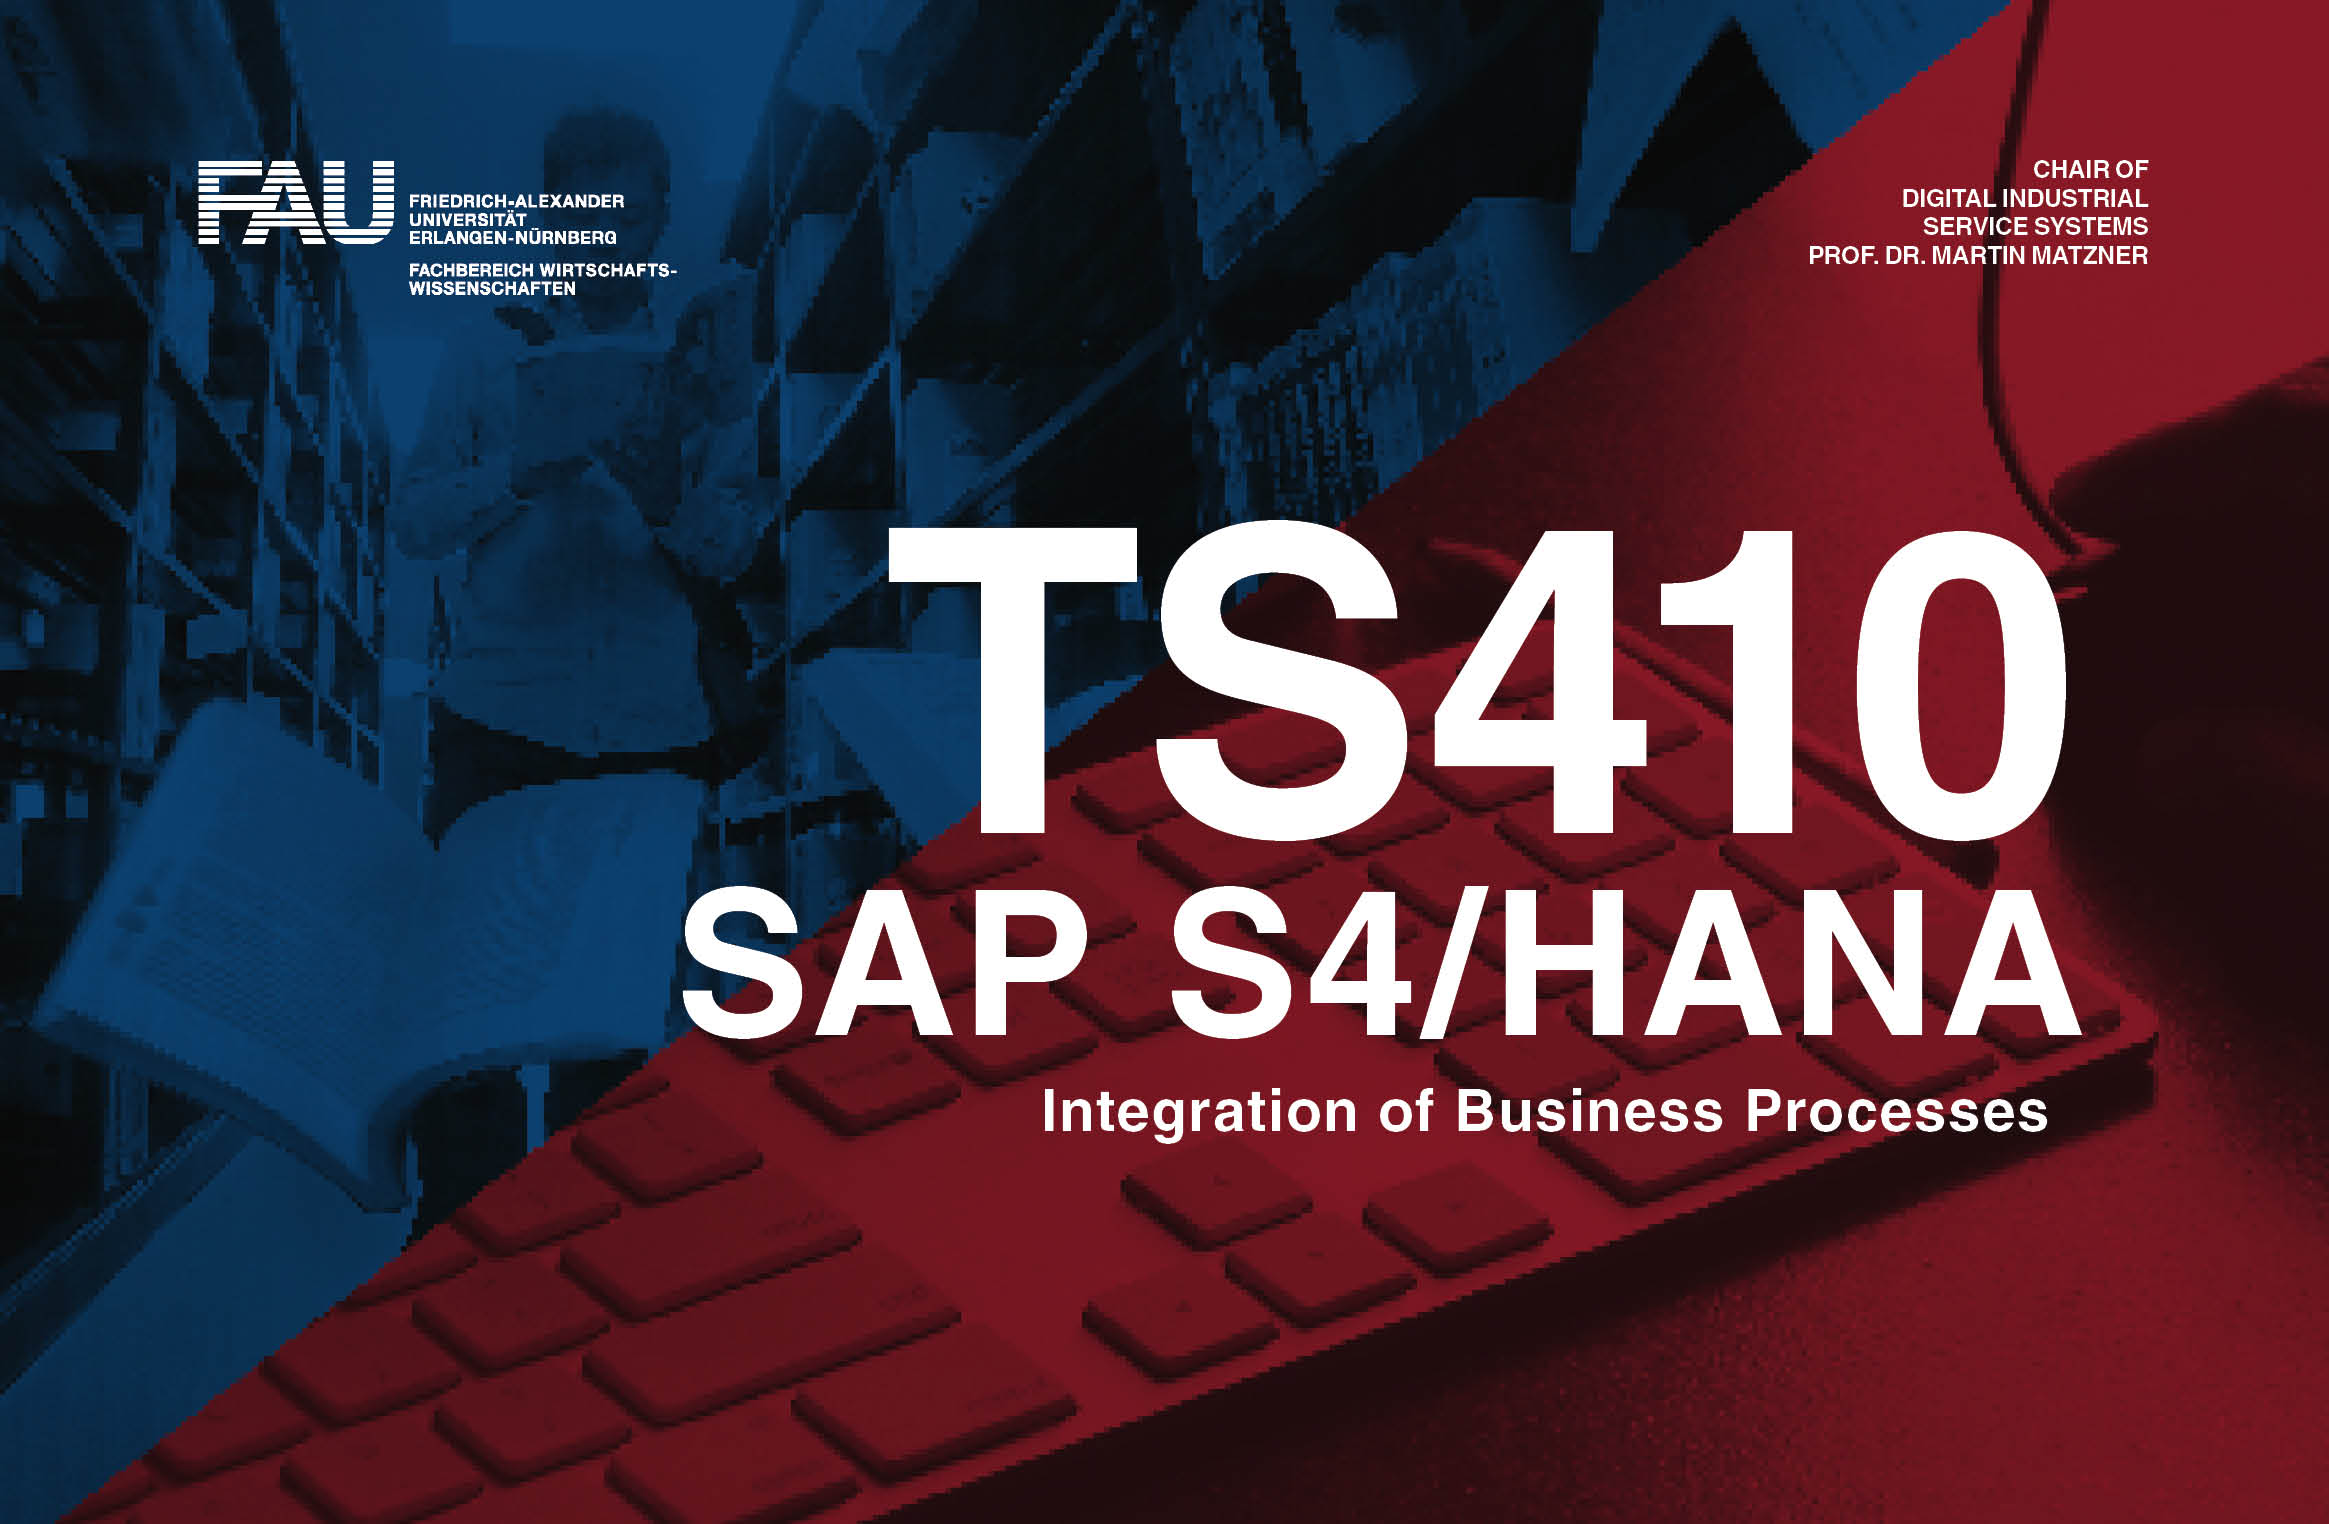 Zum Artikel "TS410 SAP S4/HANA Anmeldungen ab sofort möglich!"